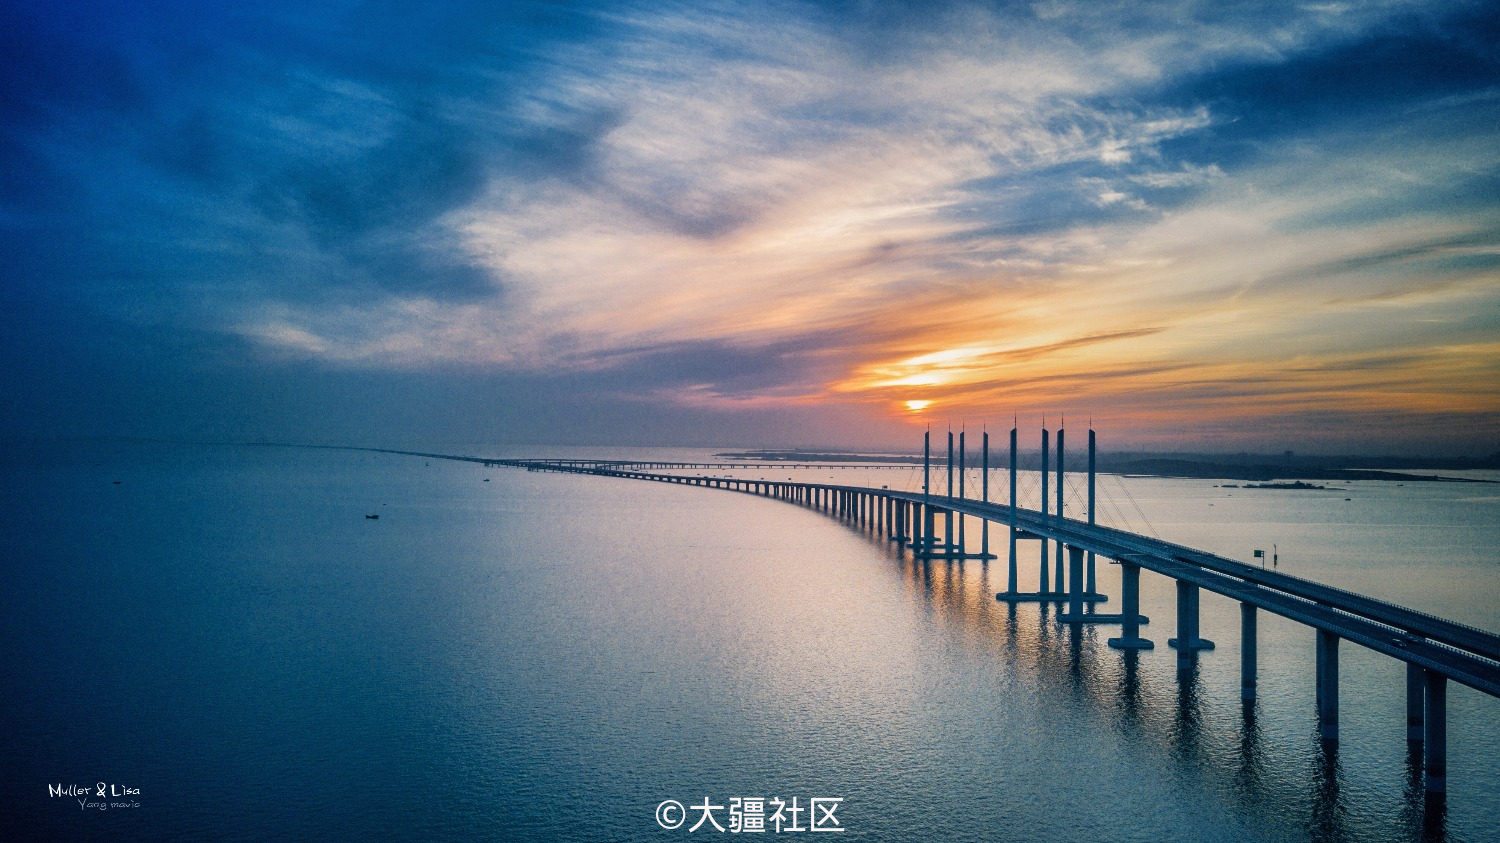 青岛胶州湾大桥 壁纸图片